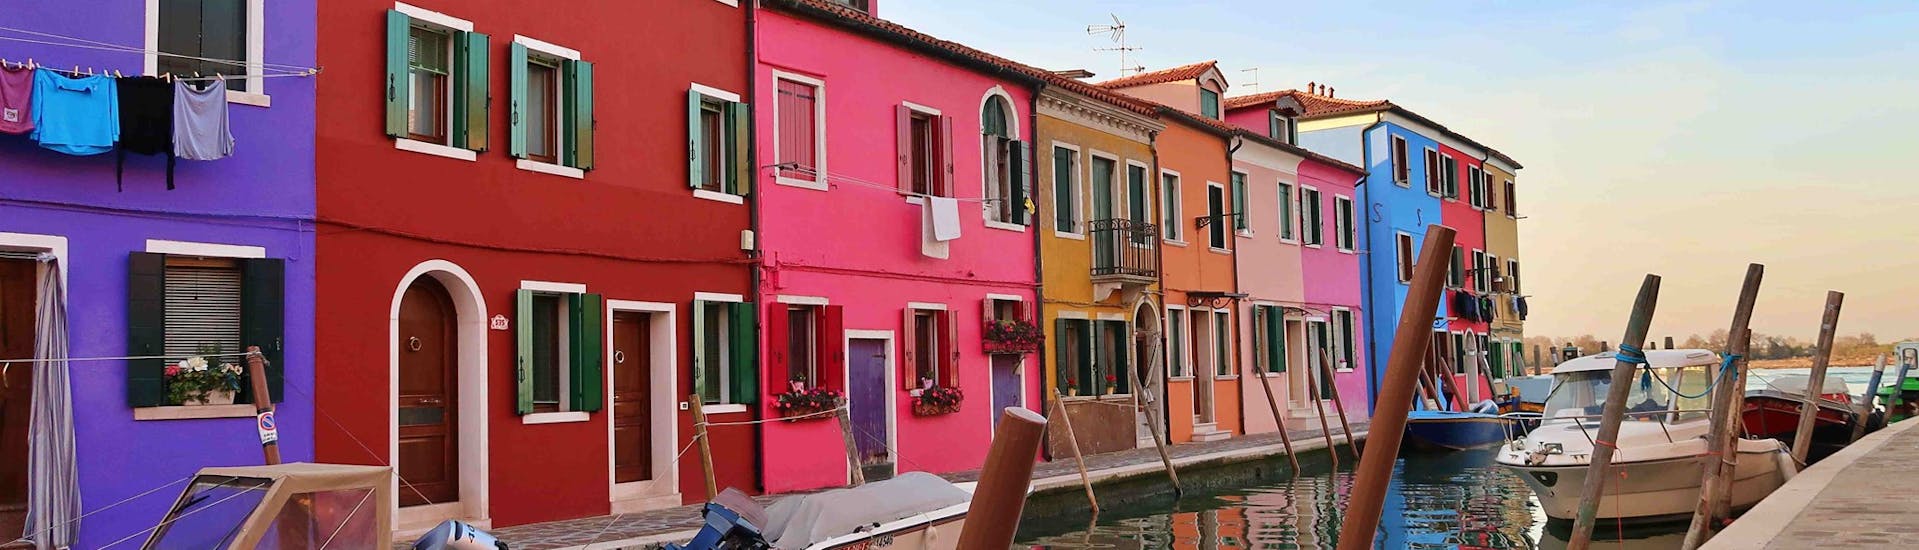 Casette colorate allineate lungo un canale a Burano durante la Gita in barca da Venezia a Murano e Burano con il Doge di Venezia.